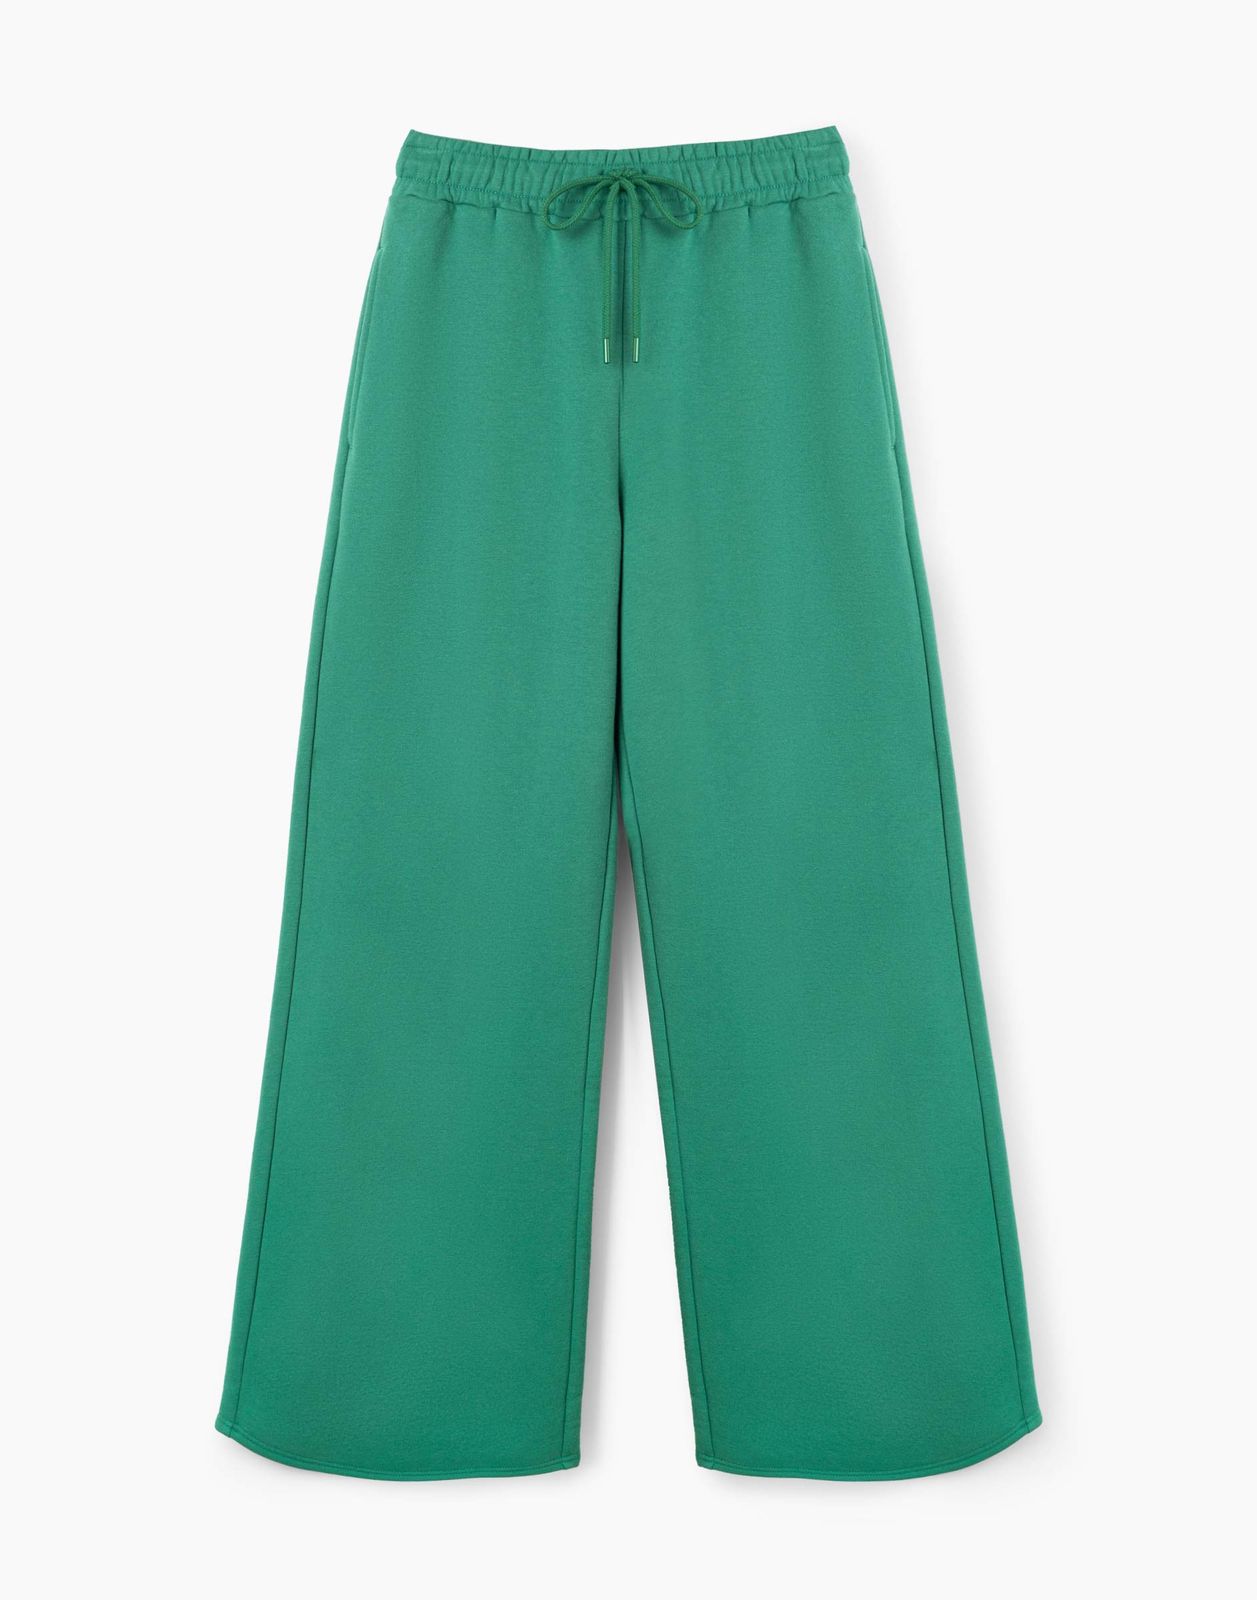 Спортивные брюки женские Gloria Jeans GAC020946 зеленые XL/170 (52-54)